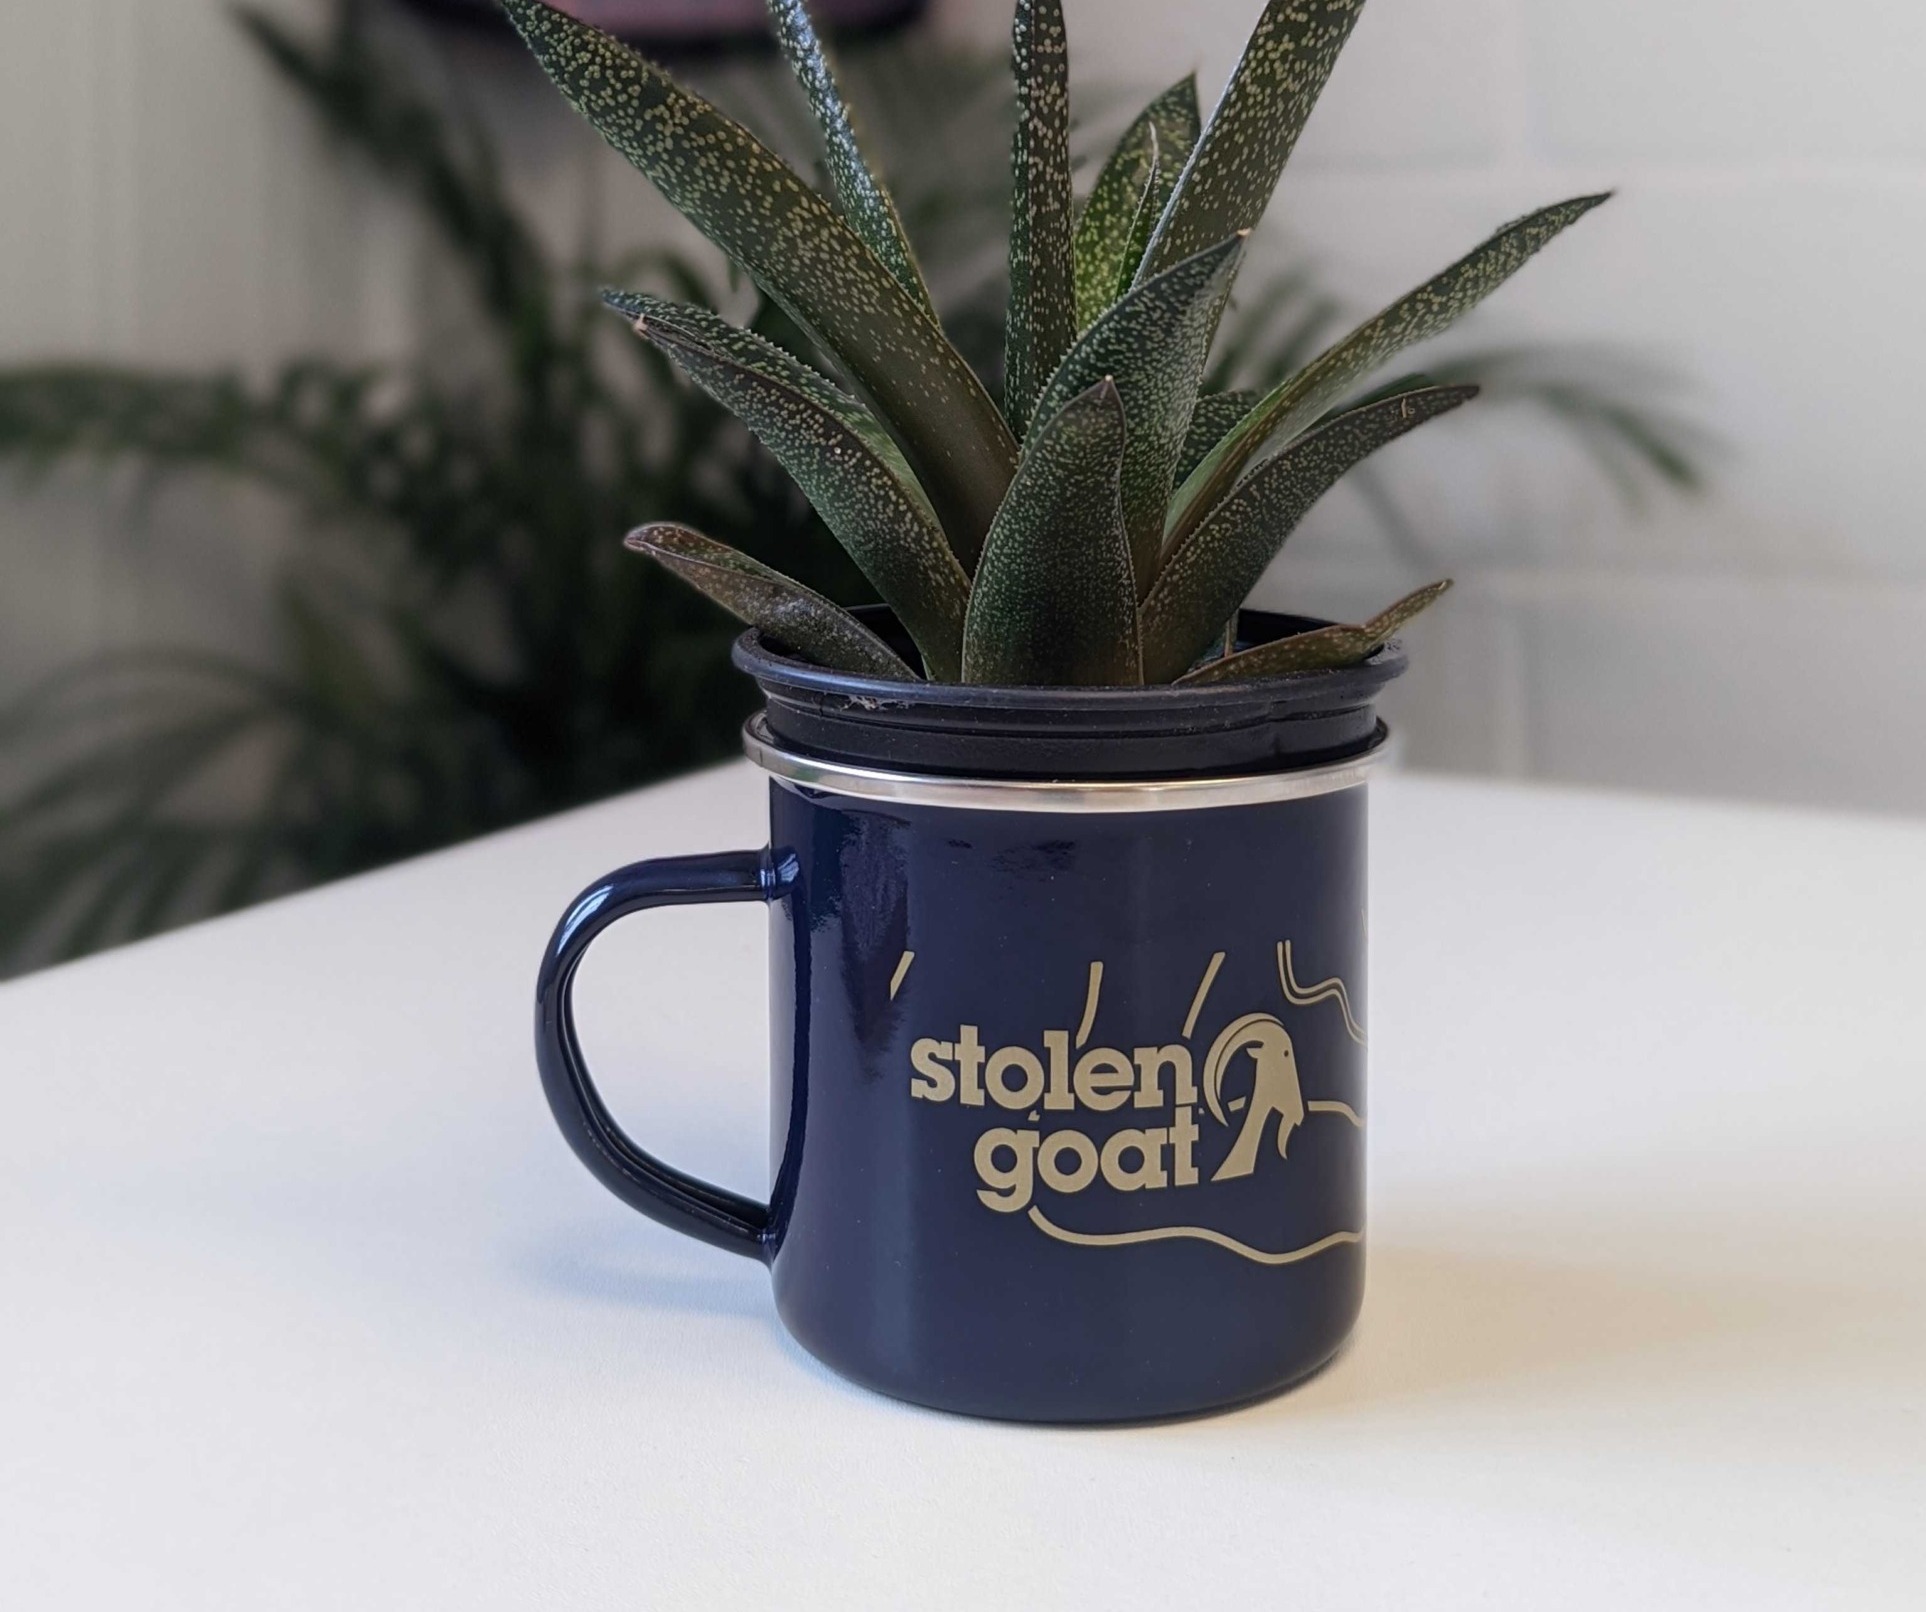 Plant in a Stolen Goat mug